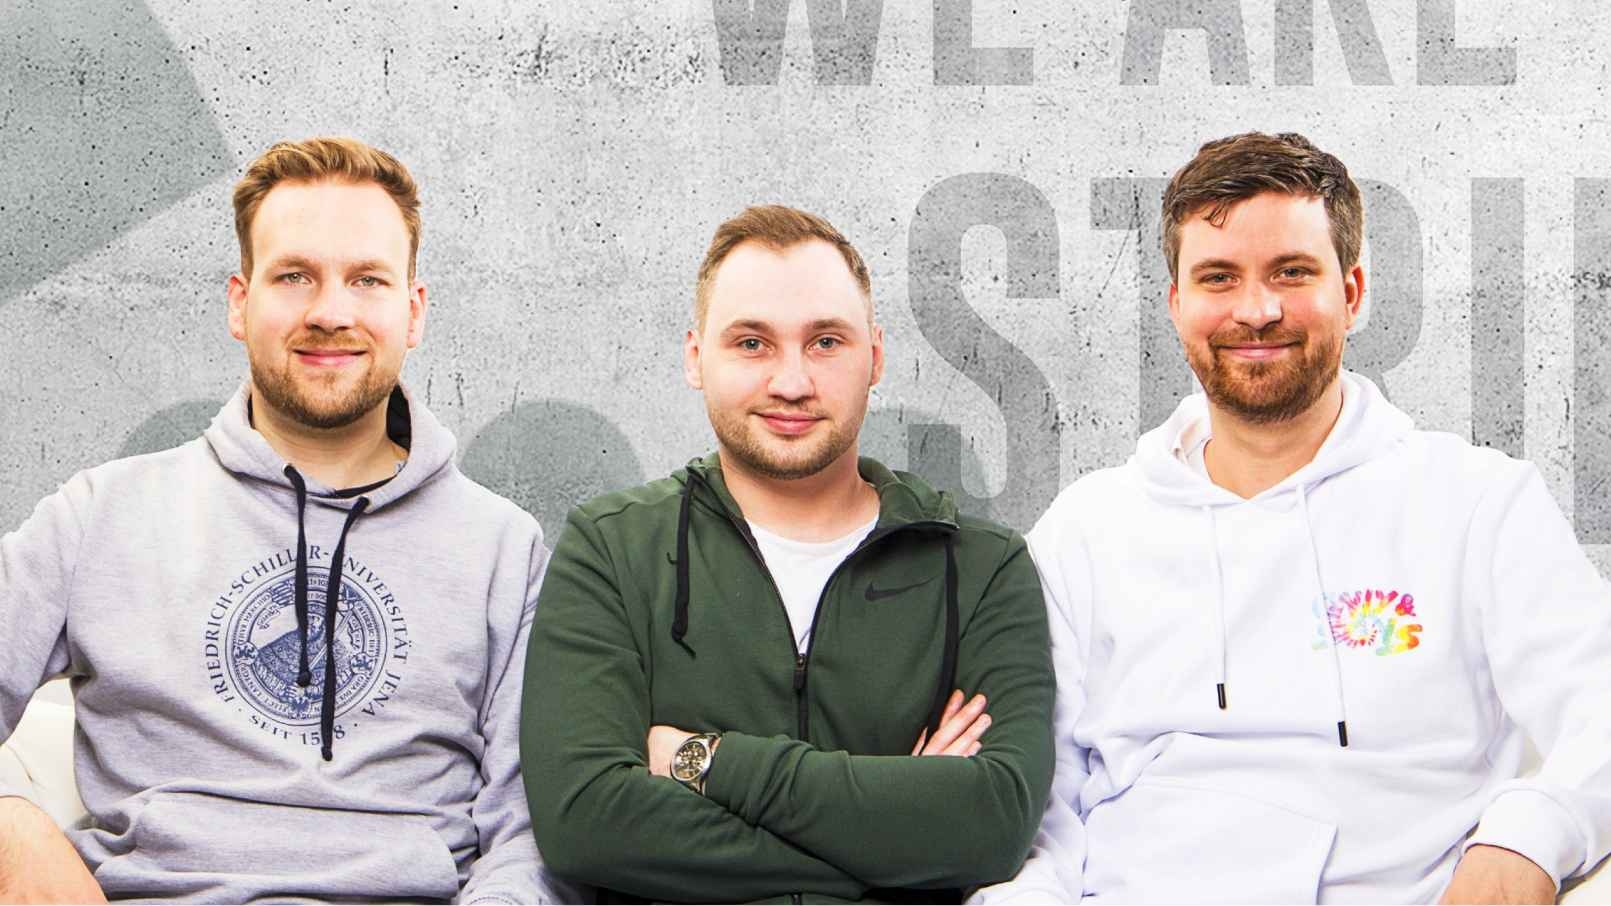 Die Gründer von Striked (v.l.): Tristan Kreuziger (CEO), Stefan Borinczyk (CTO) und Kevin Hildebrandt (CPO)